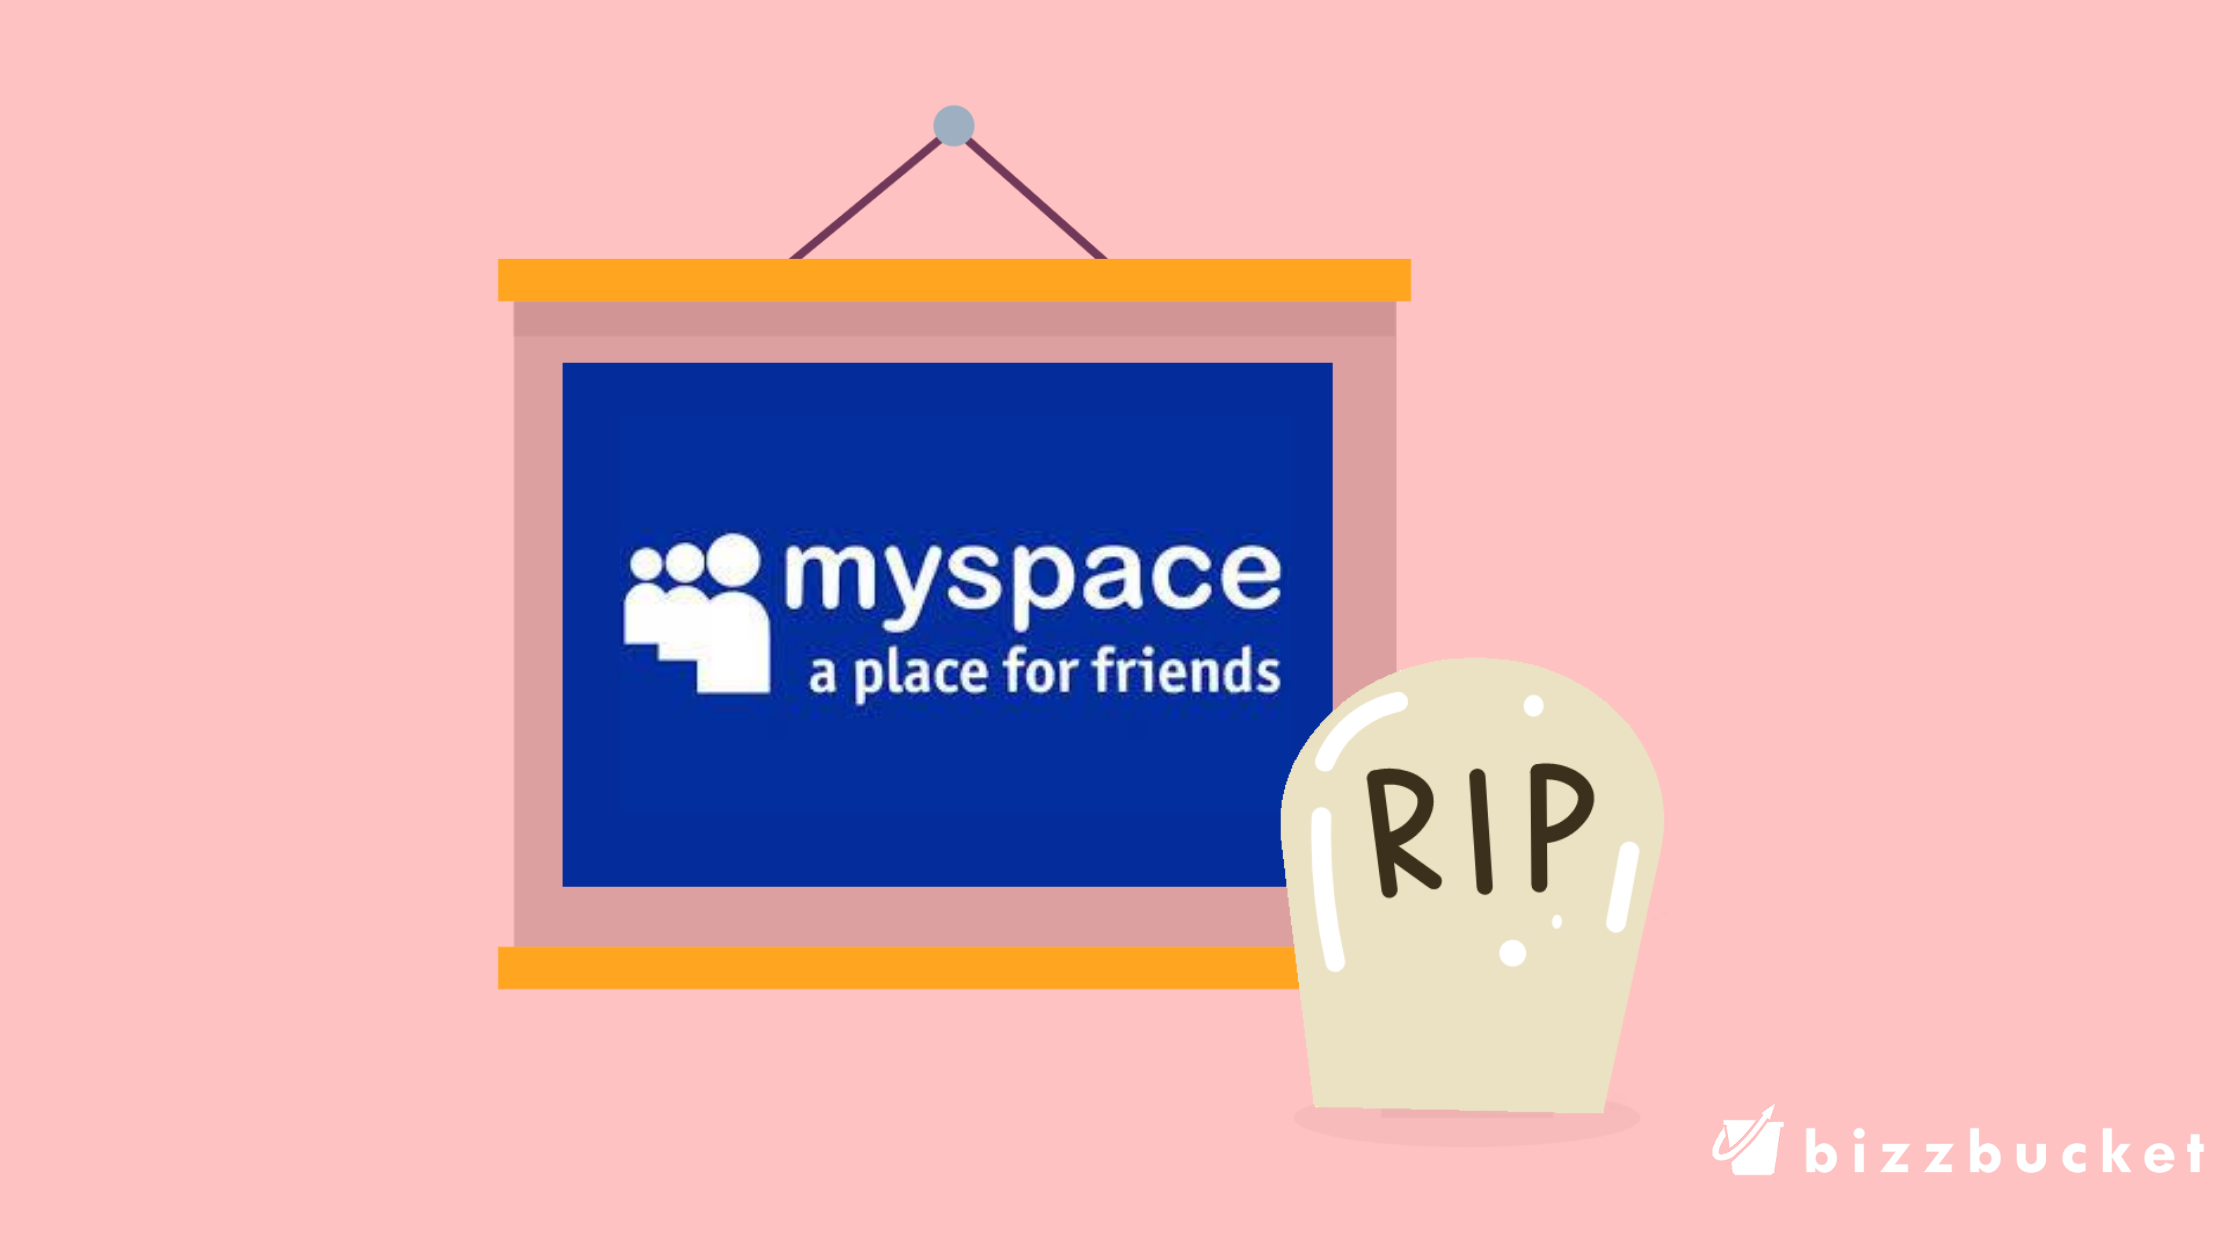 myspace bizzbucket